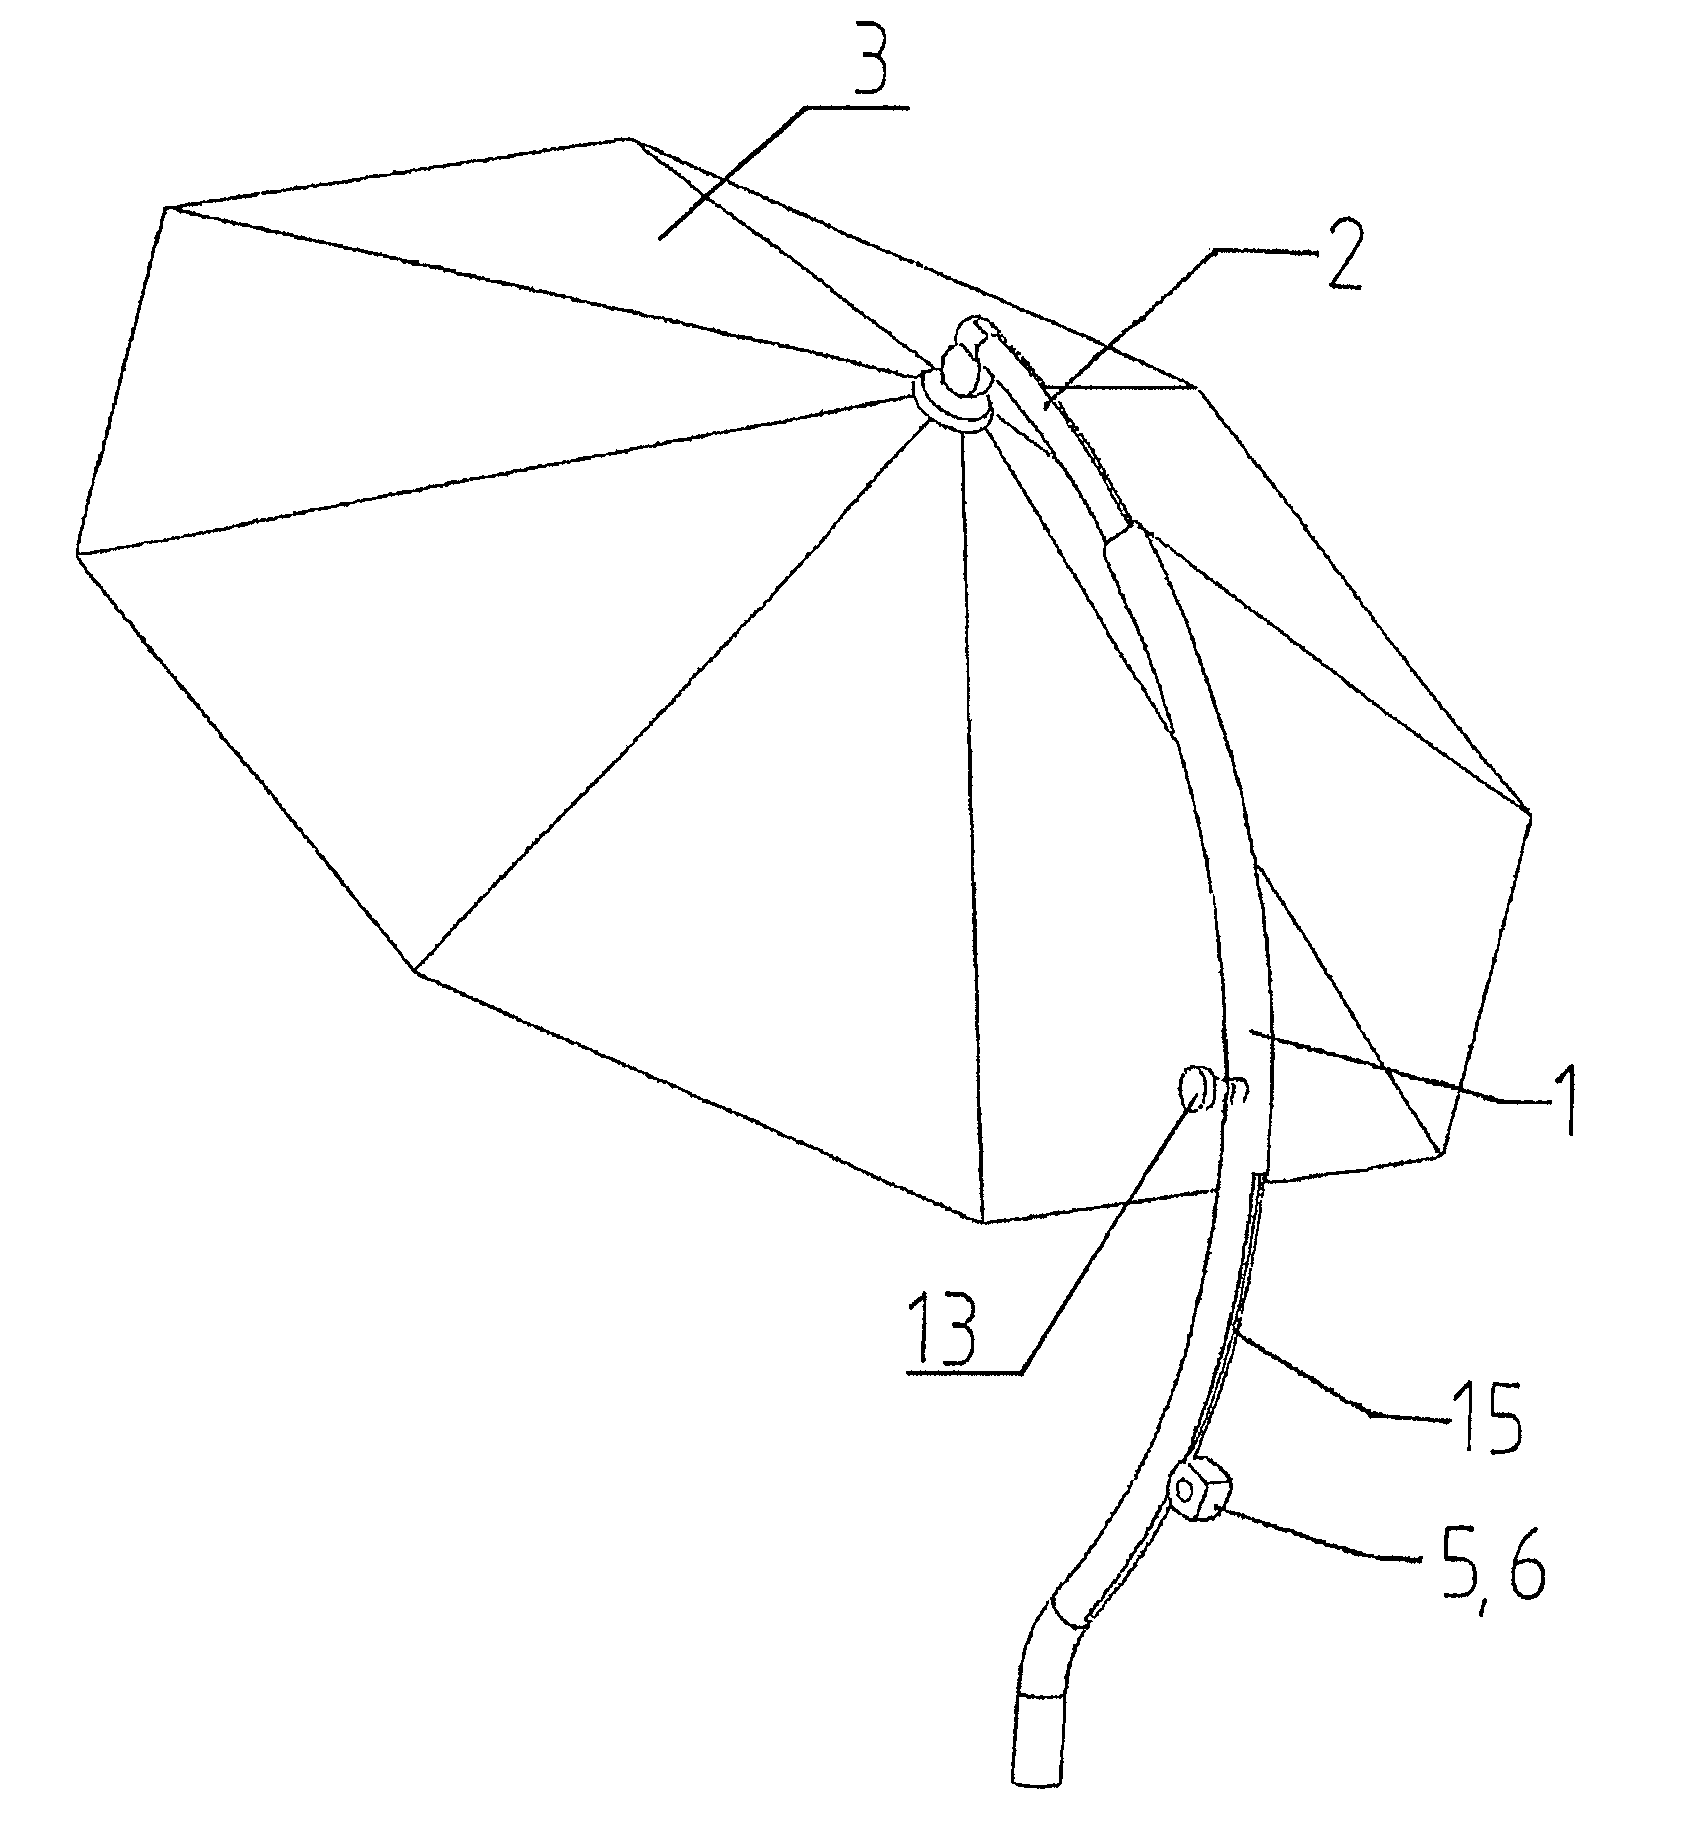 Telescopic umbrella